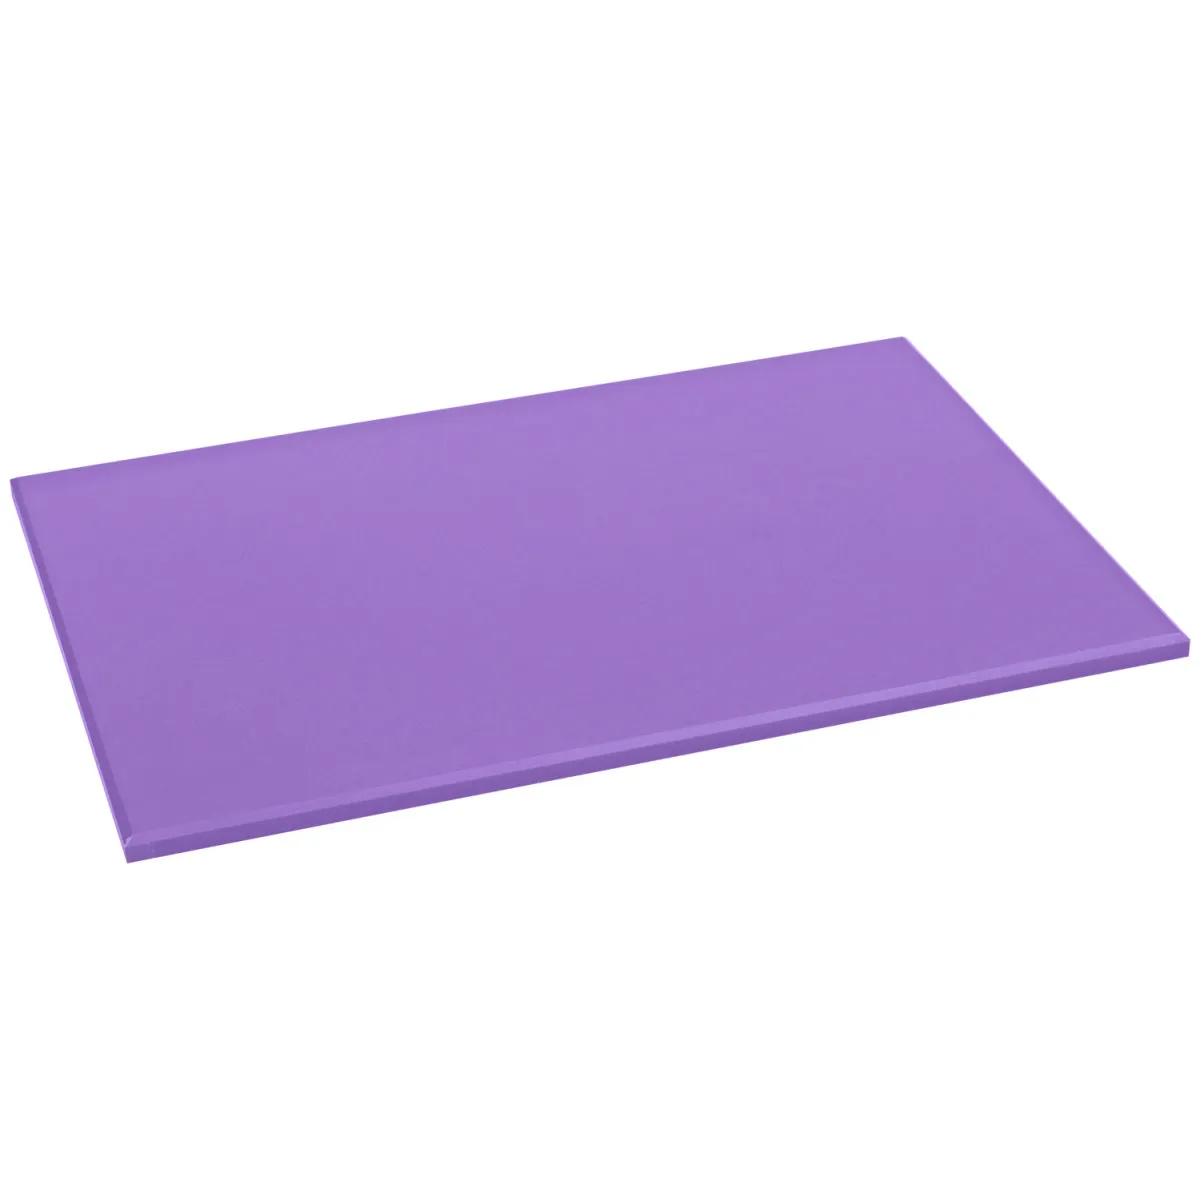 Tagliere polietilene Clever gastronorm 1/1 ; 53x32.5x1.2 cm (LxLxH); violetto